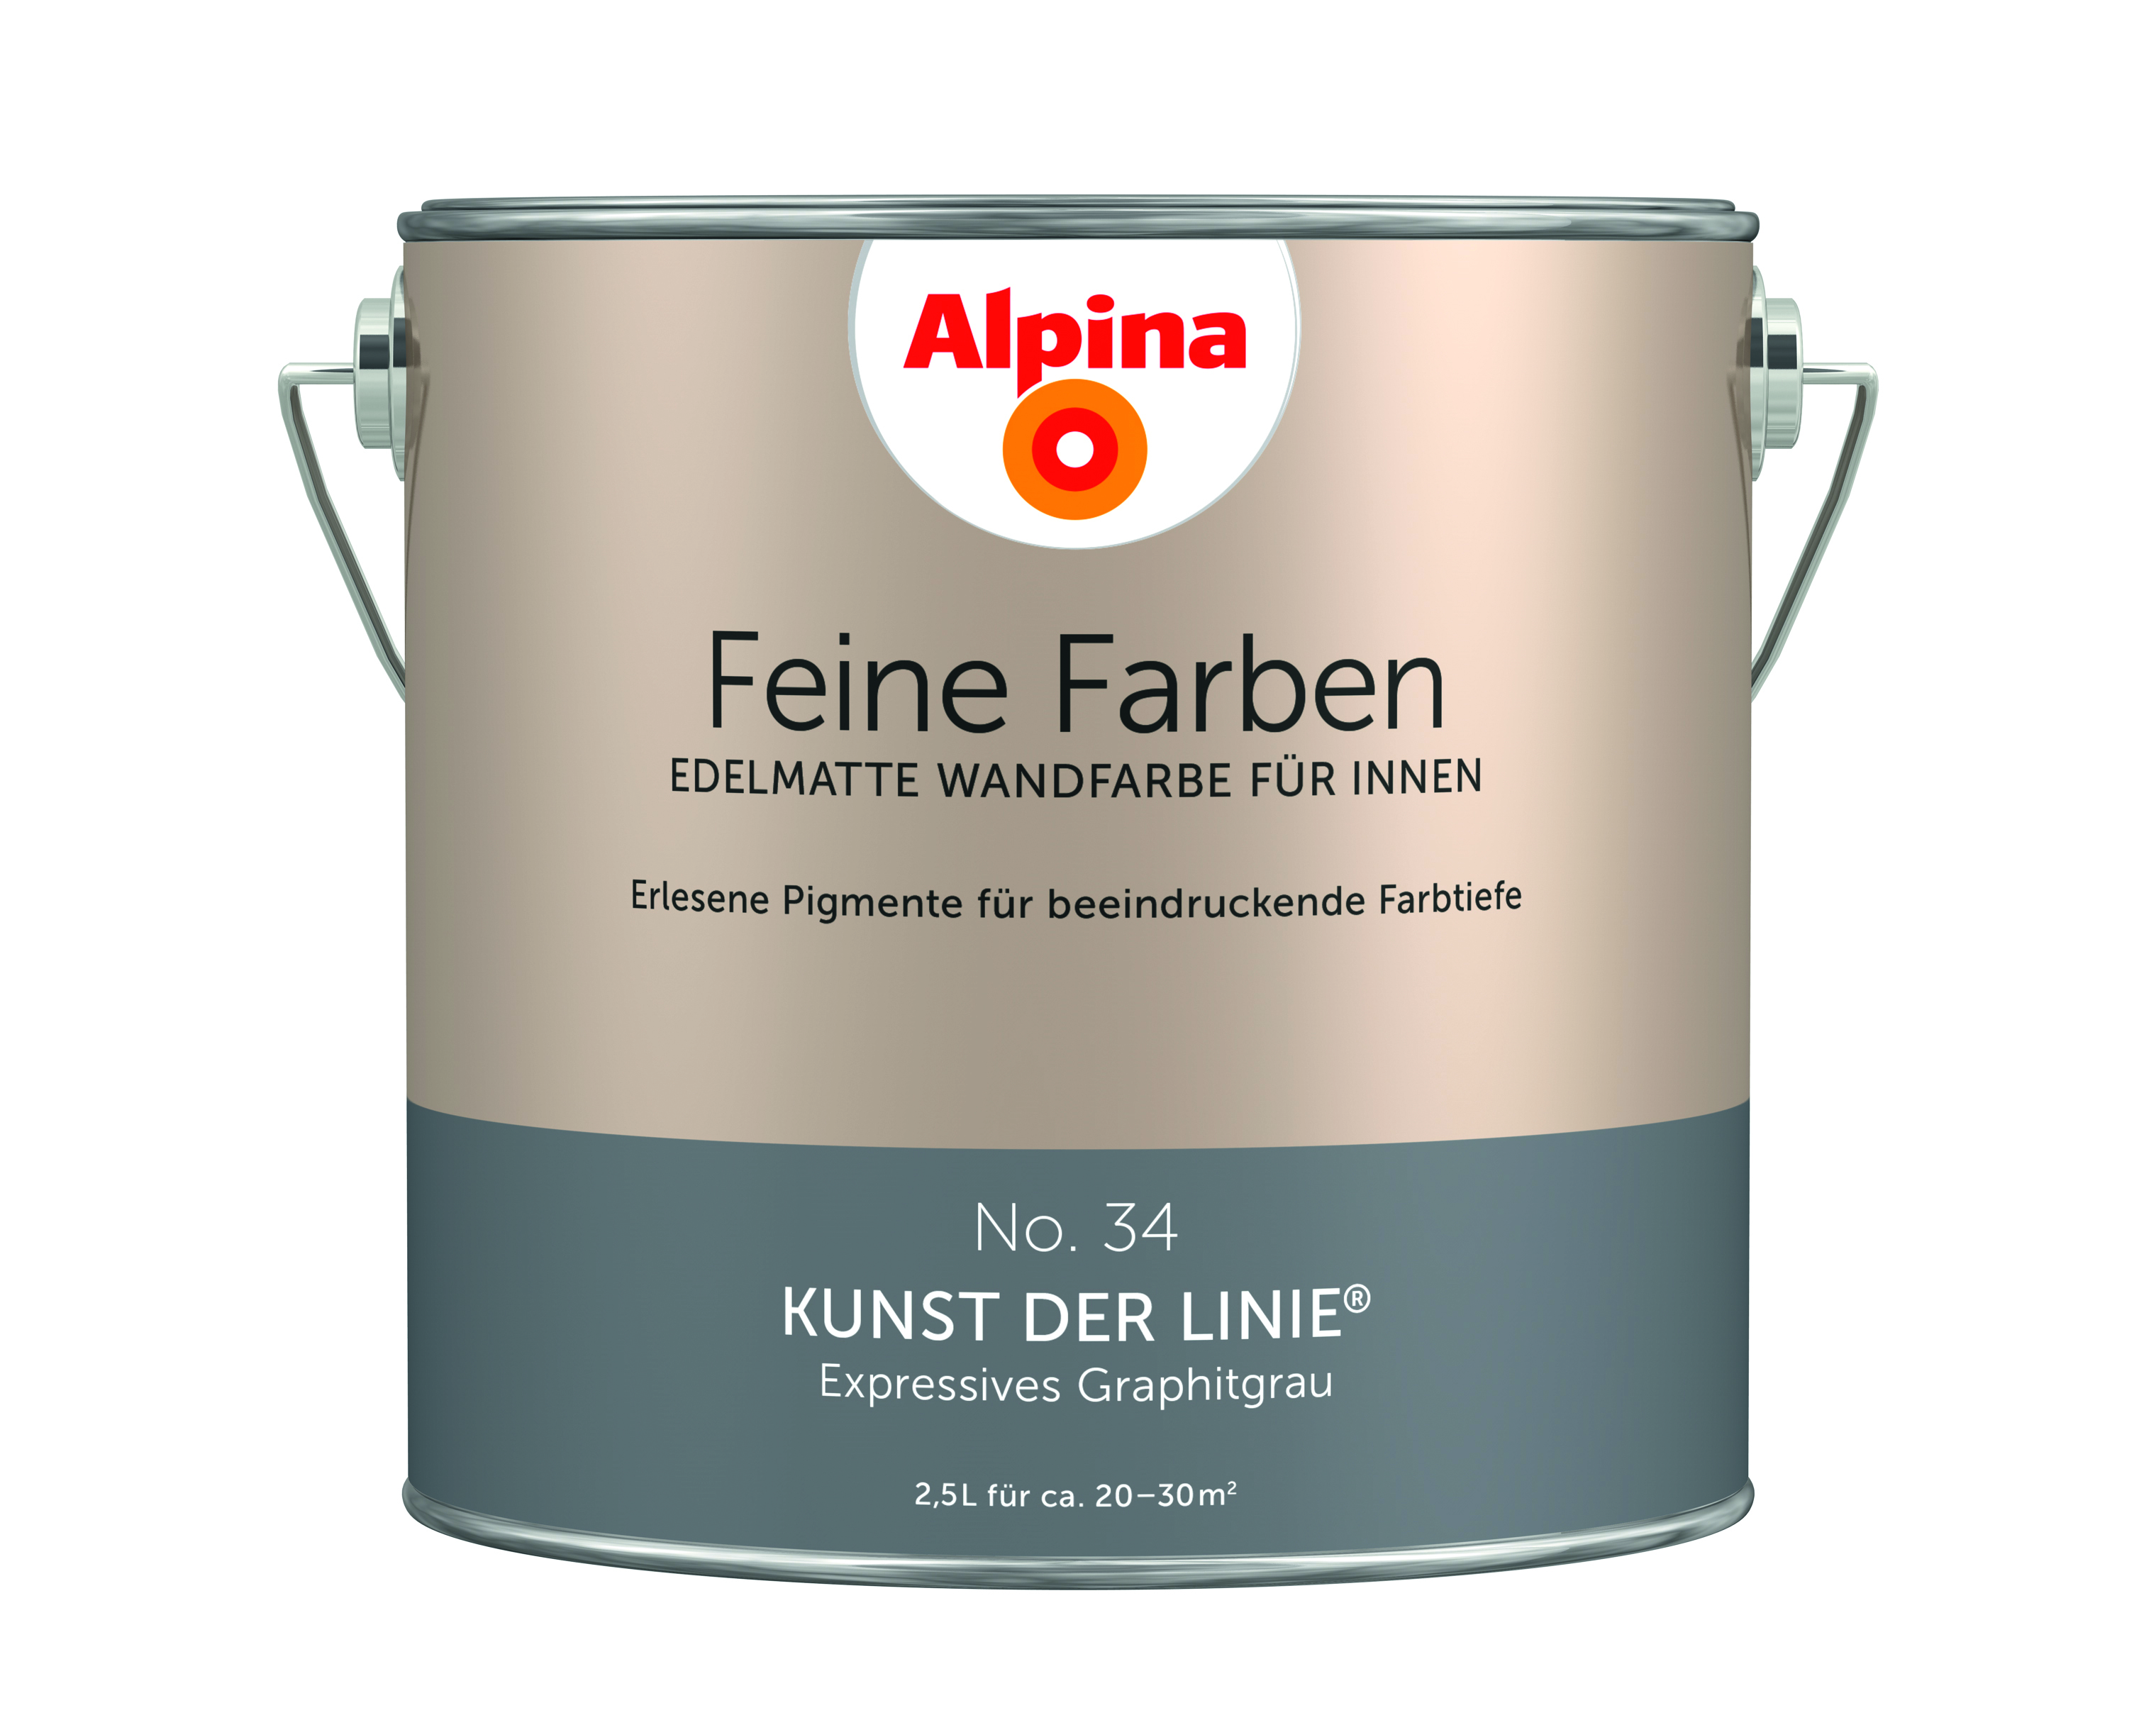 Alpina Feine Farben No. 34, Kunst der Linie